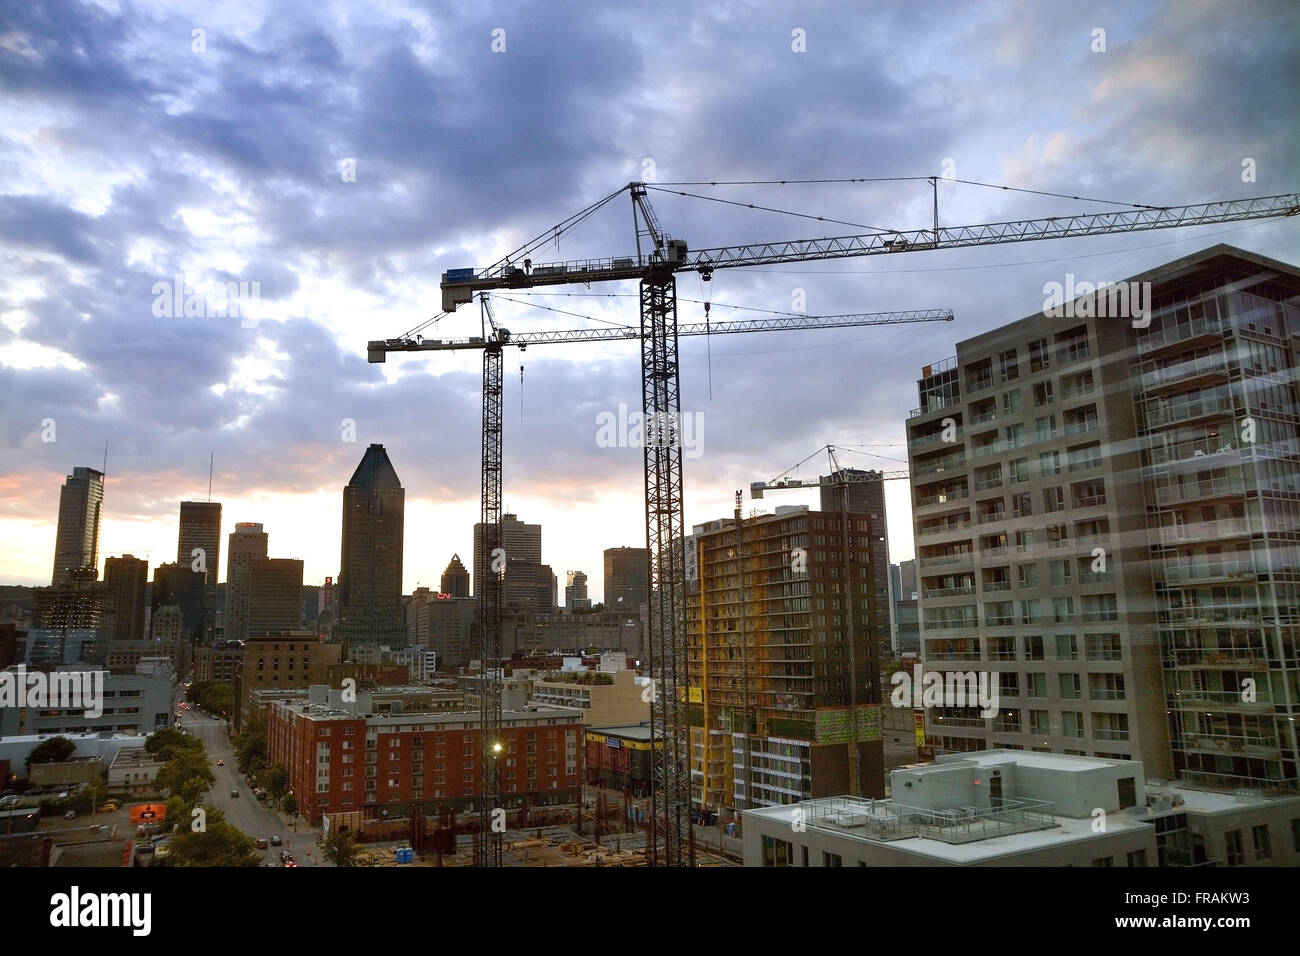 Vista desde la parte superior de edificios y grúas de construcción downtown al atardecer Foto de stock